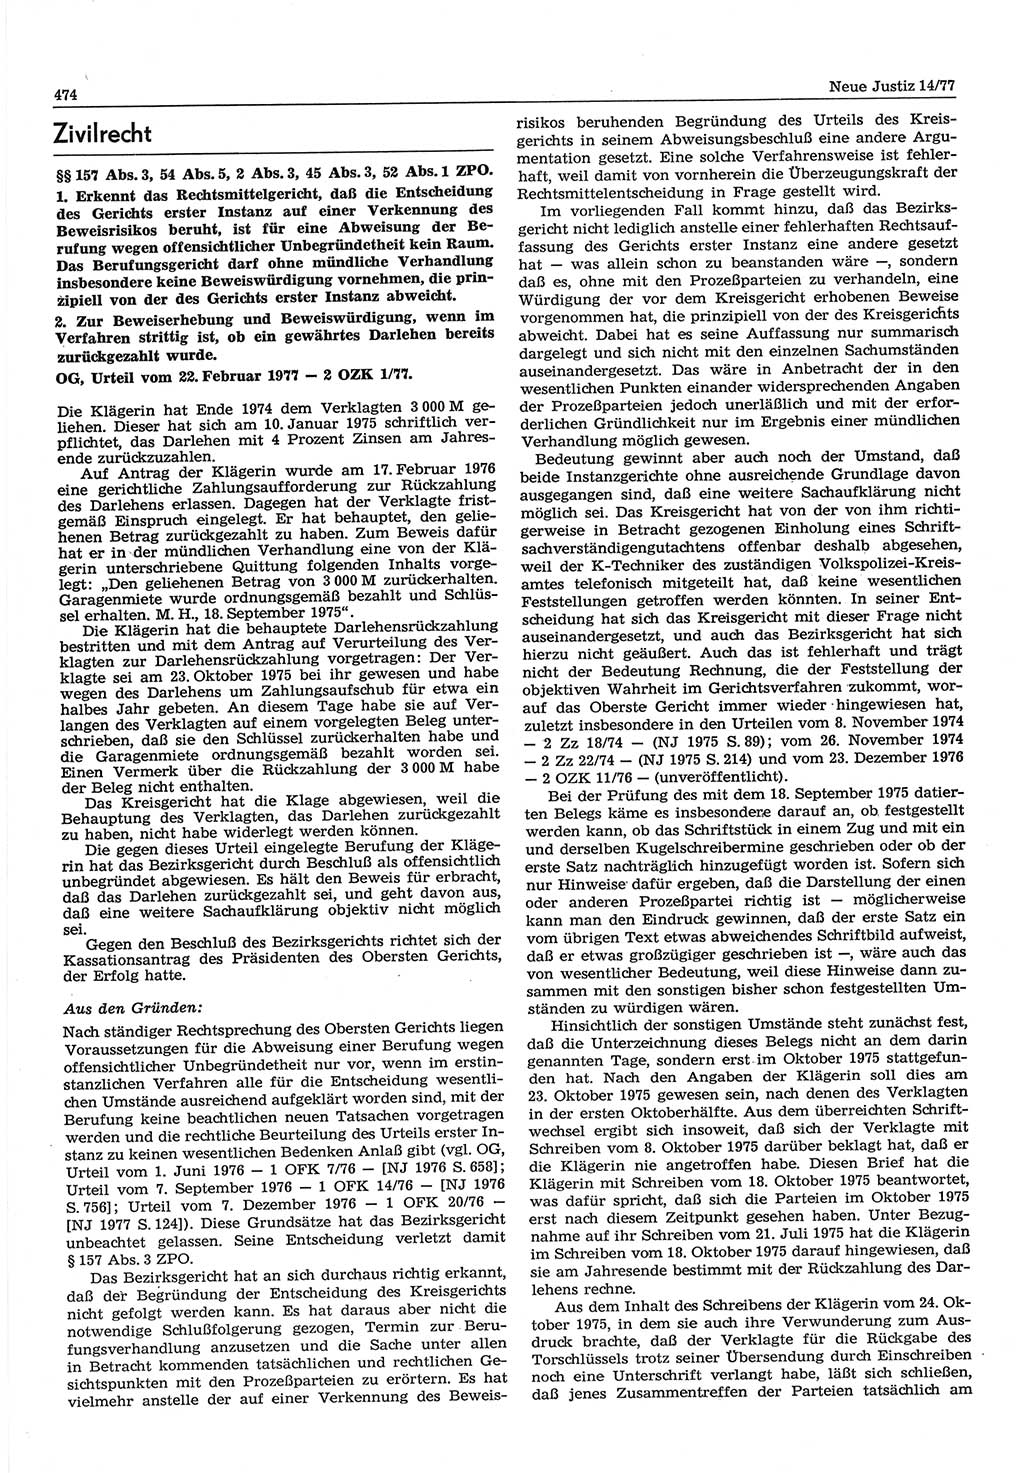 Neue Justiz (NJ), Zeitschrift für Recht und Rechtswissenschaft-Zeitschrift, sozialistisches Recht und Gesetzlichkeit, 31. Jahrgang 1977, Seite 474 (NJ DDR 1977, S. 474)